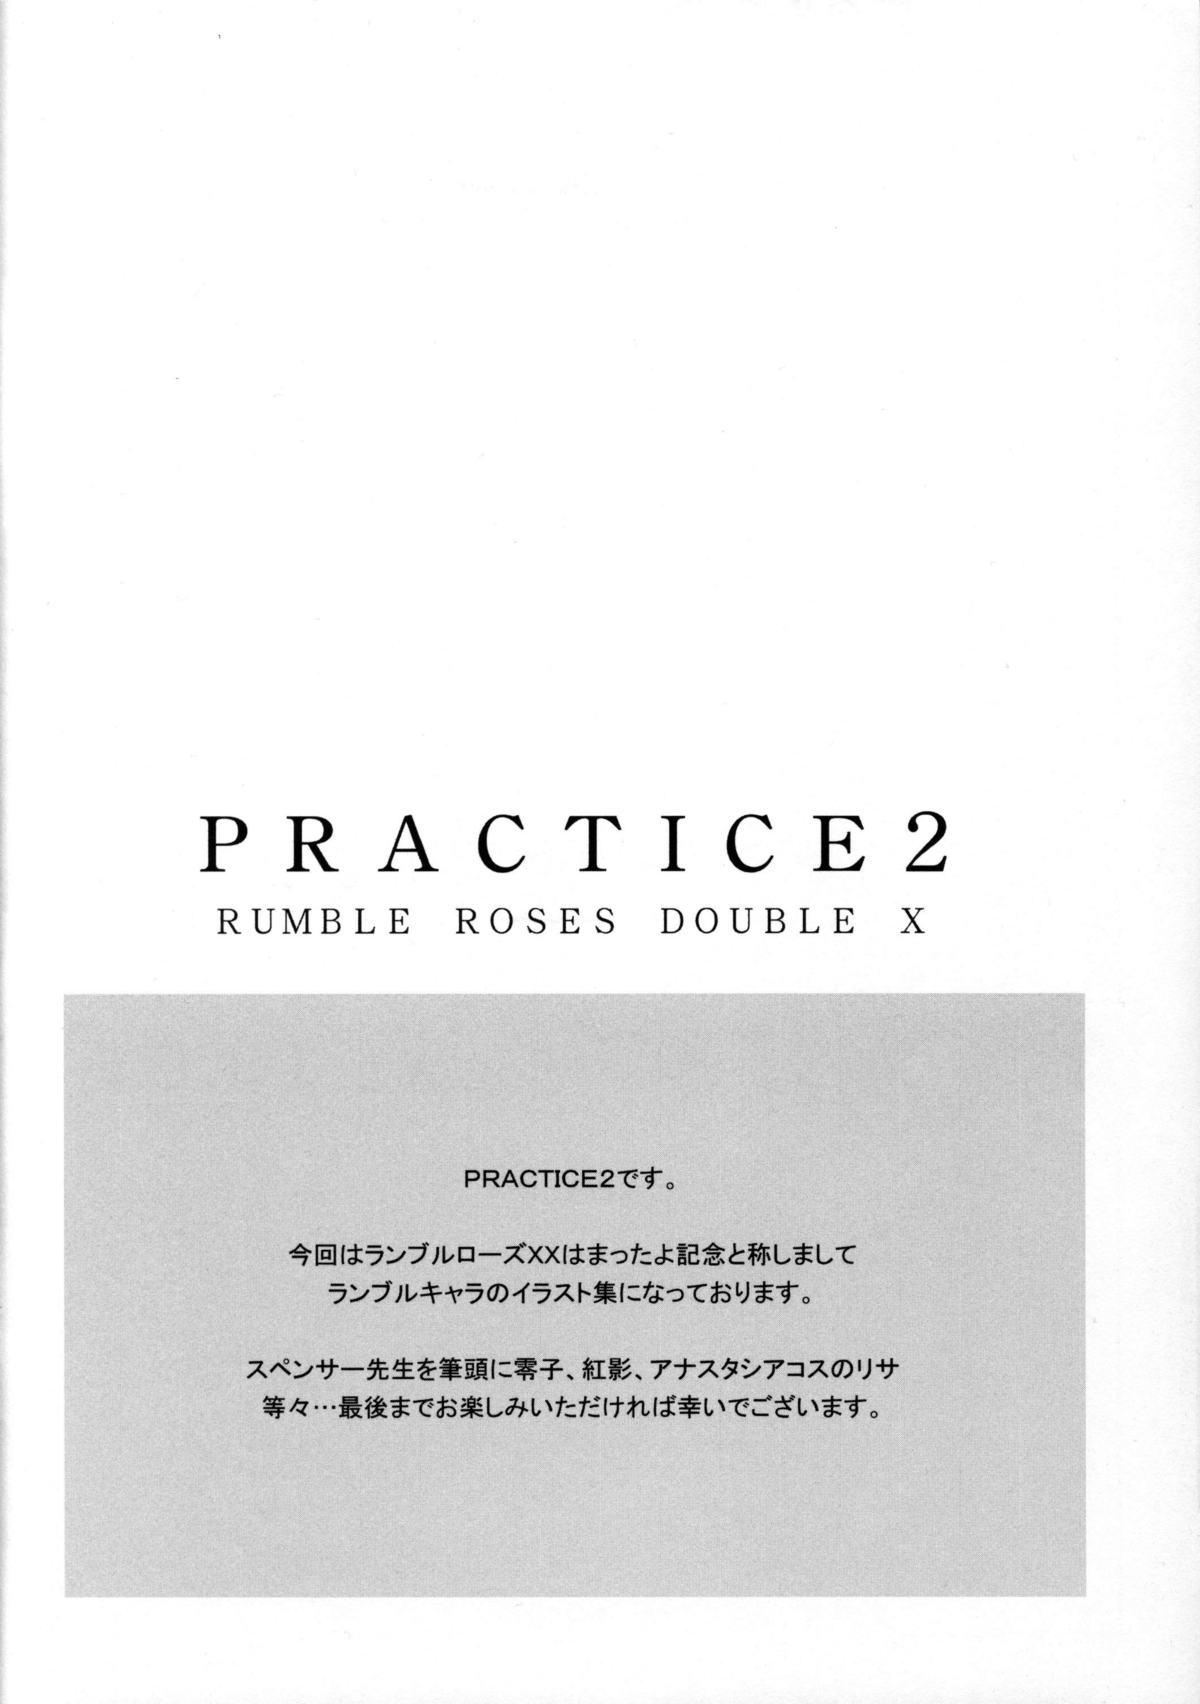 PRACTICE2 1